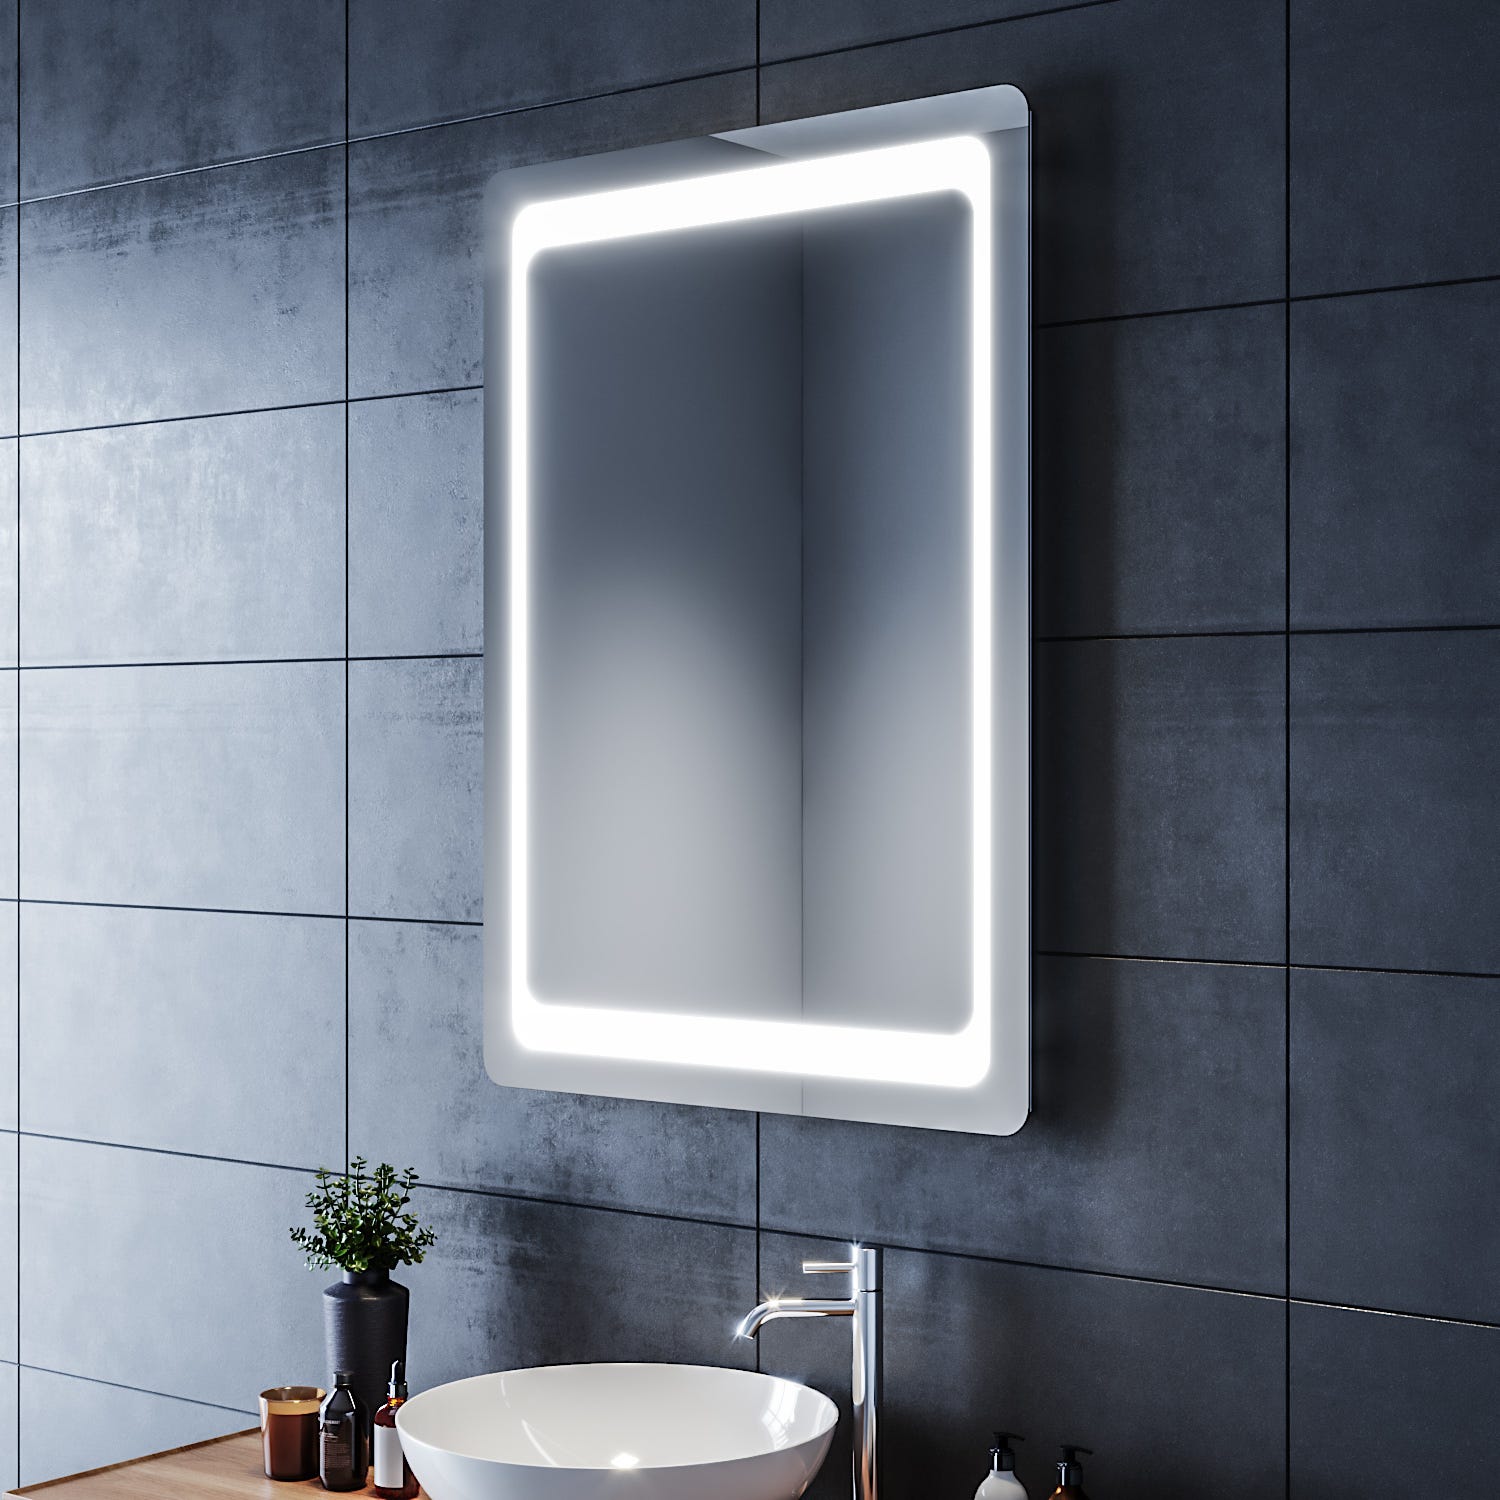 SIRHONA Miroir de Salle de Bain 100x70 Miroir LED AVCE Anti-buée et éclairage intégré Blanc Froid 2